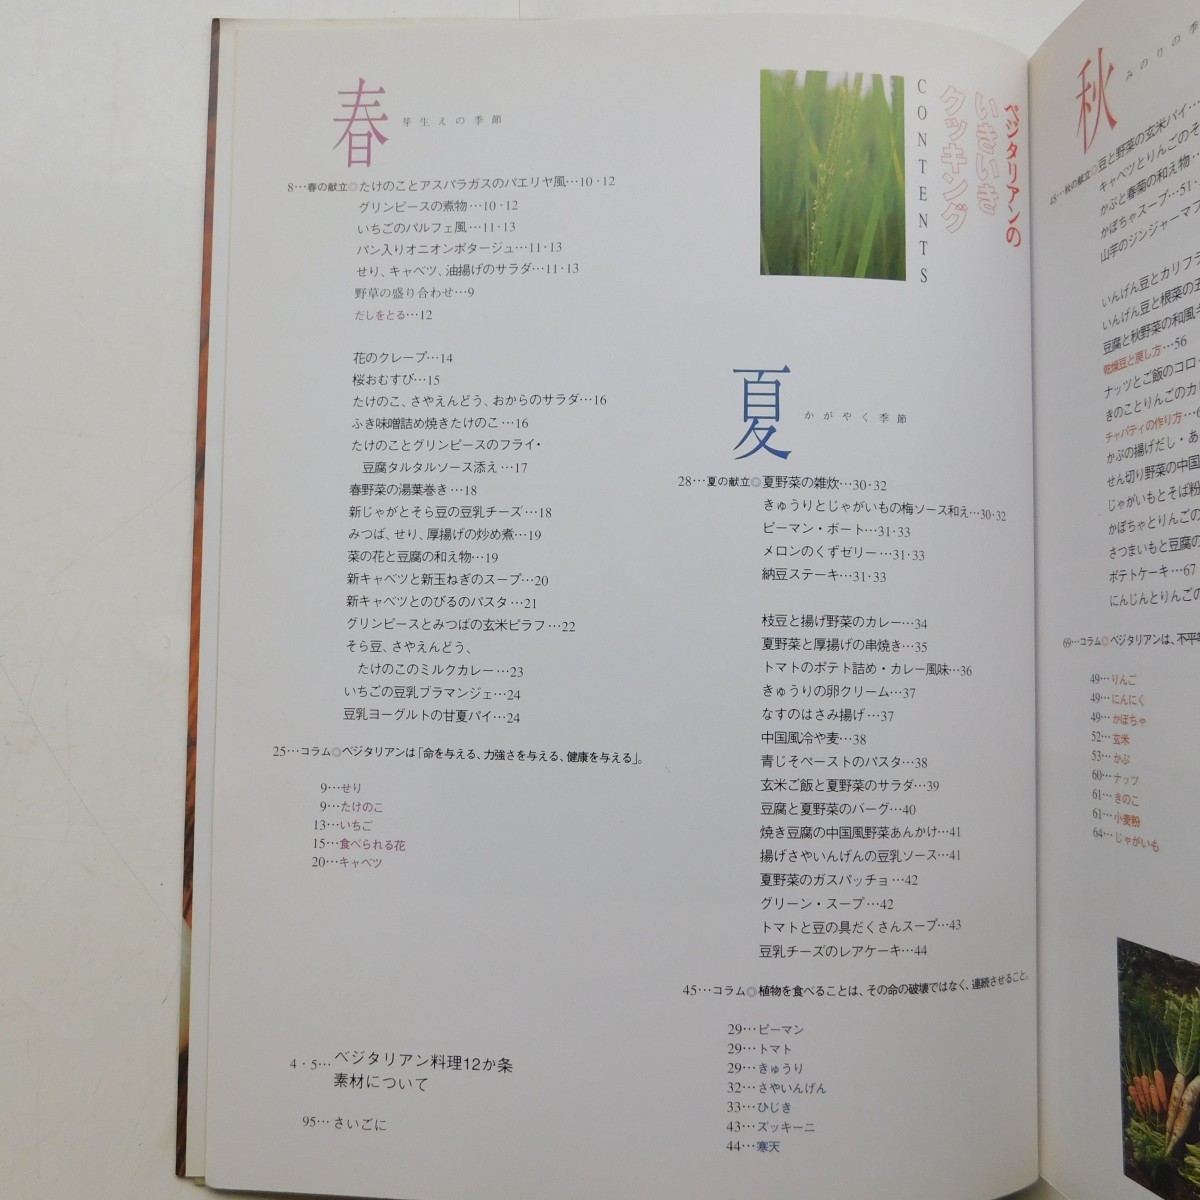 特2 53306 / ベジタリアンのいきいきクッキング 2003年9月10日発行 著者 鶴田静 エドワード・レビンソン 豆と野菜のおいしい80品_画像2